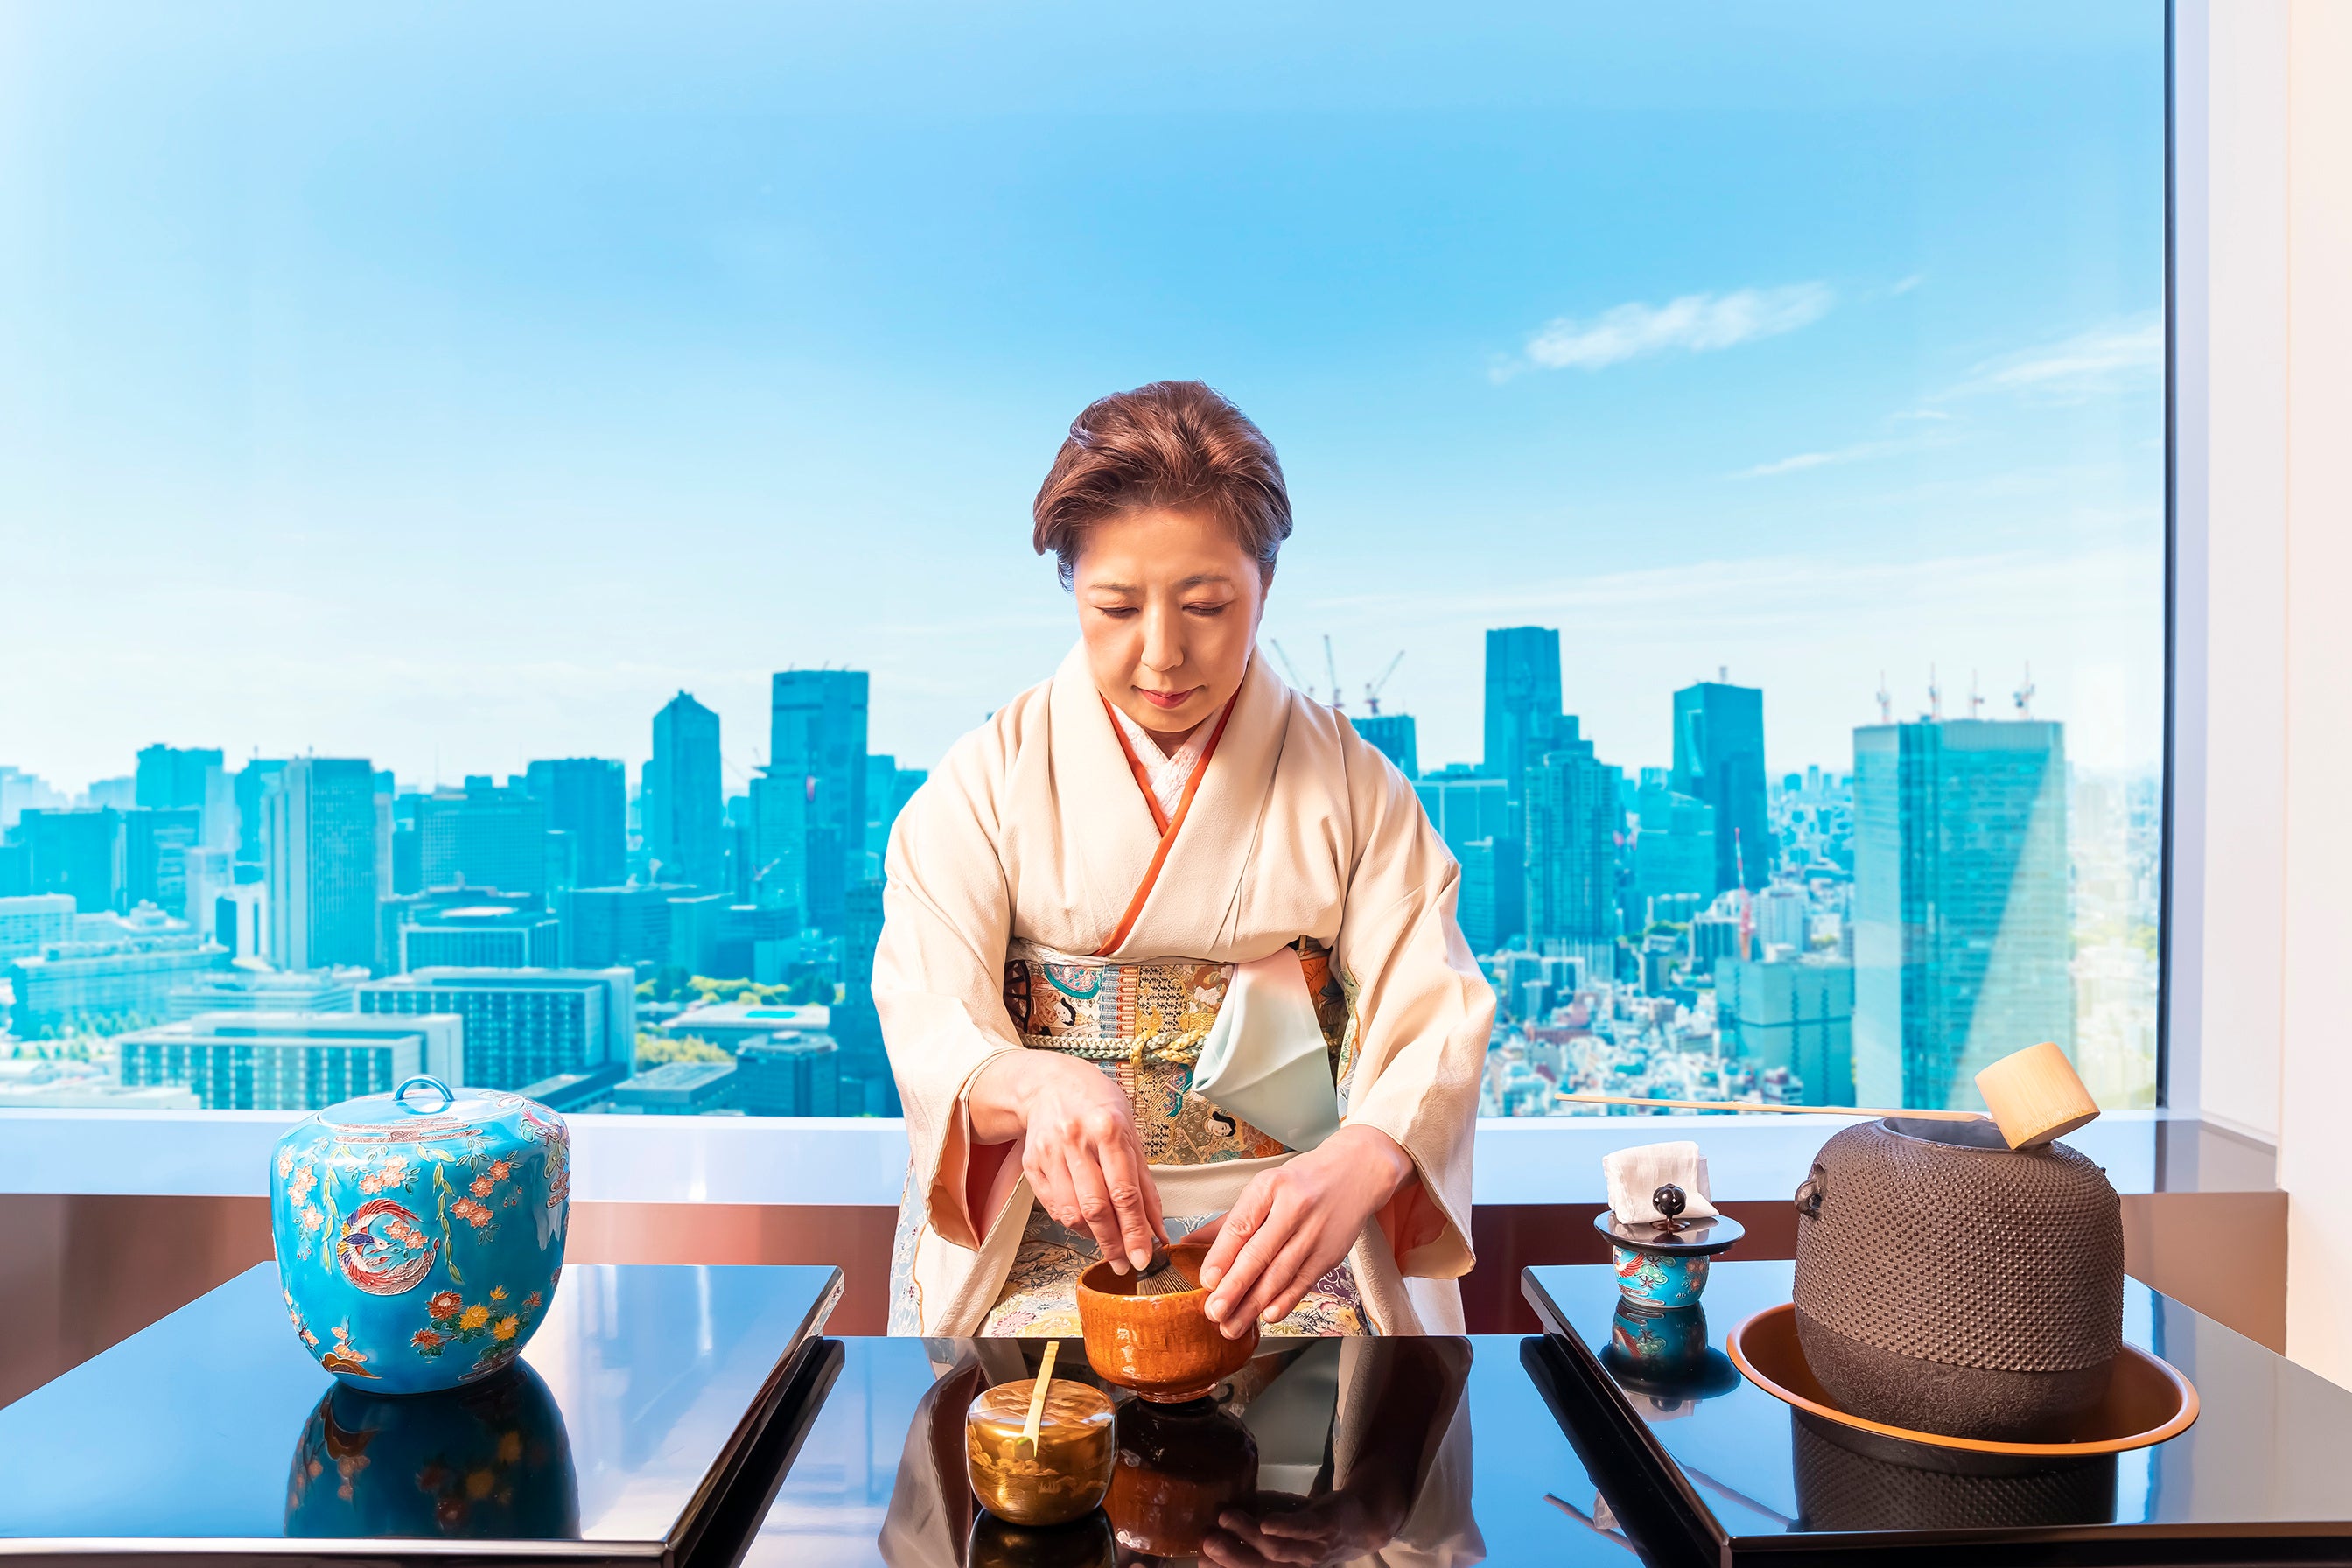 ザ・プリンスギャラリー 東京紀尾井町 地上約180mの“絶景茶道体験”など宿泊者限定体験プログラムを拡充